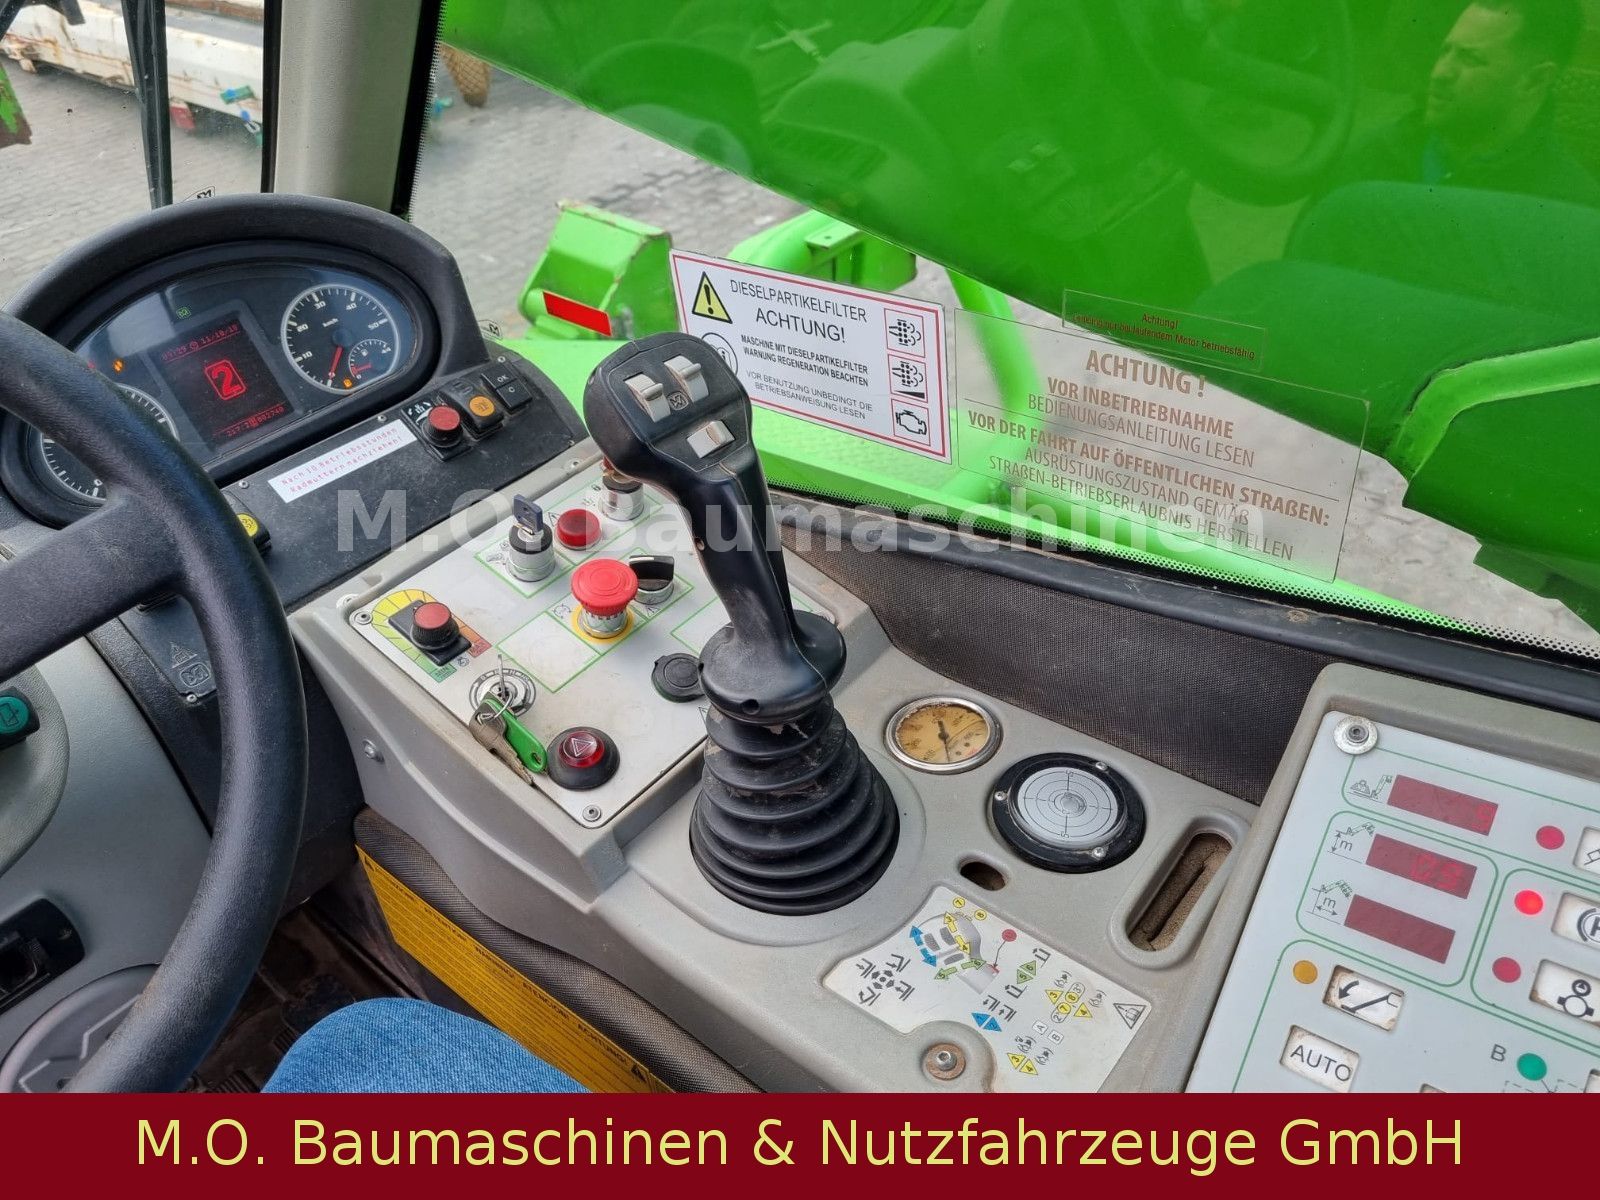 Fahrzeugabbildung Merlo Roto 38.16 S / SW / Gabel /Schaufel / Haken /